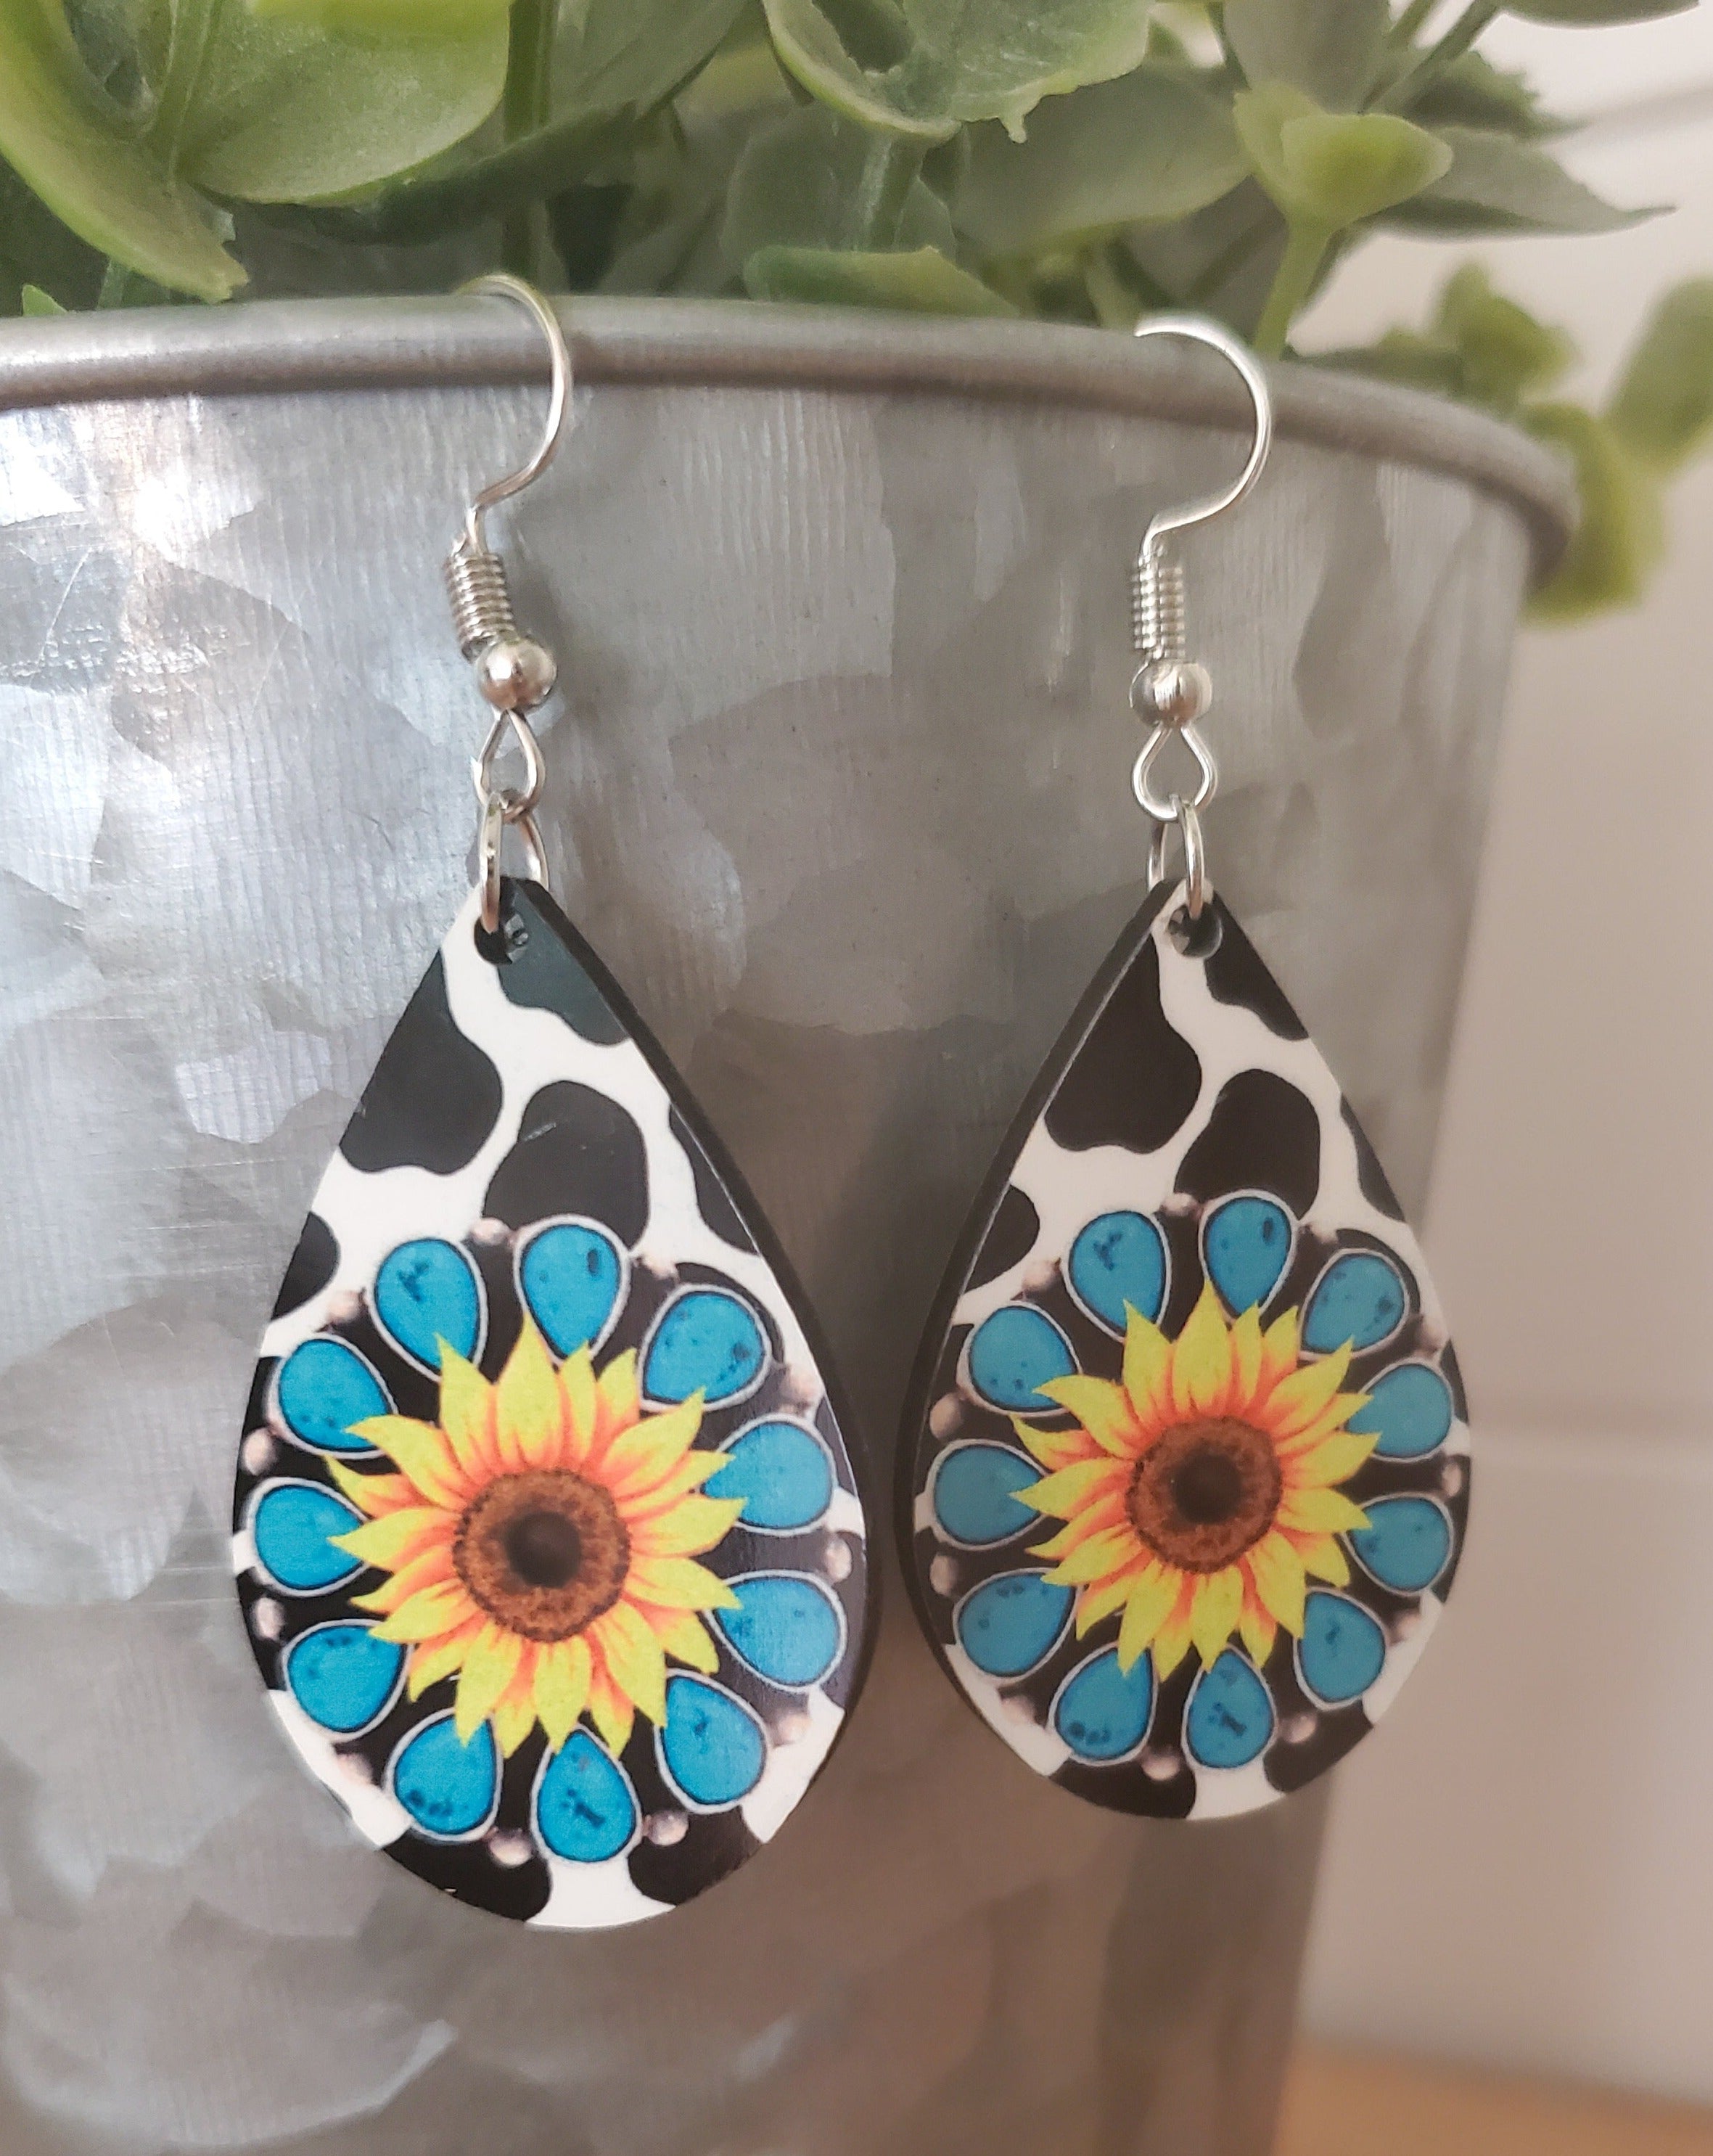 Turquoise sunflower earrings